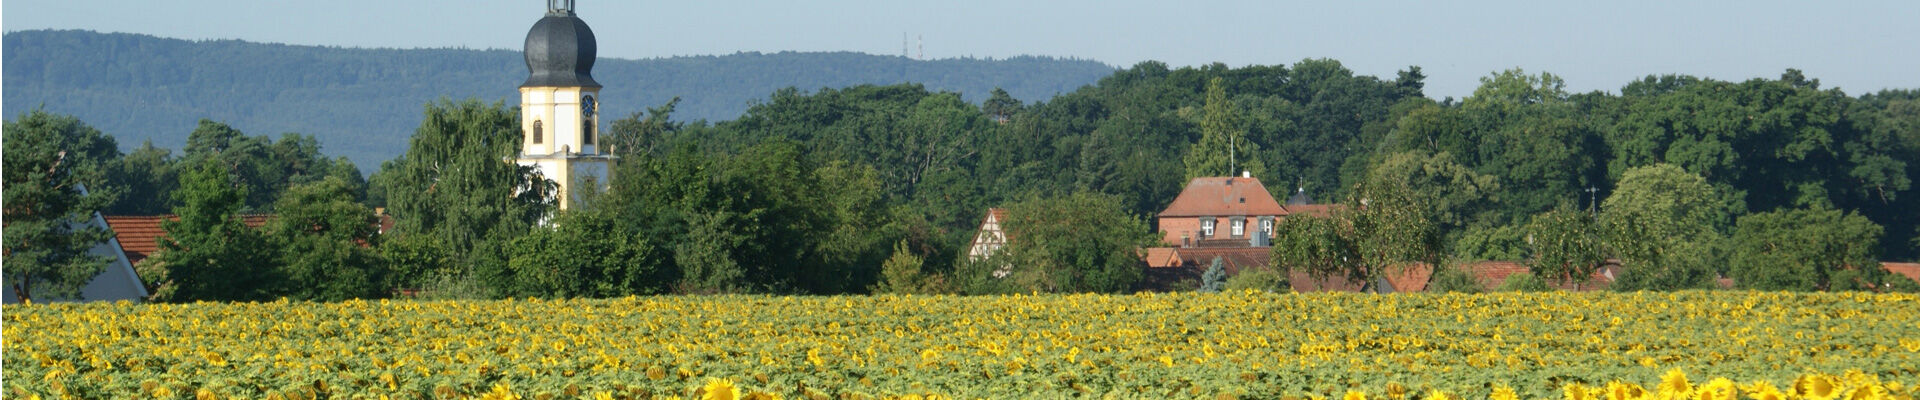 Rüdenhausen-Sonnenblumenfeld-Folge